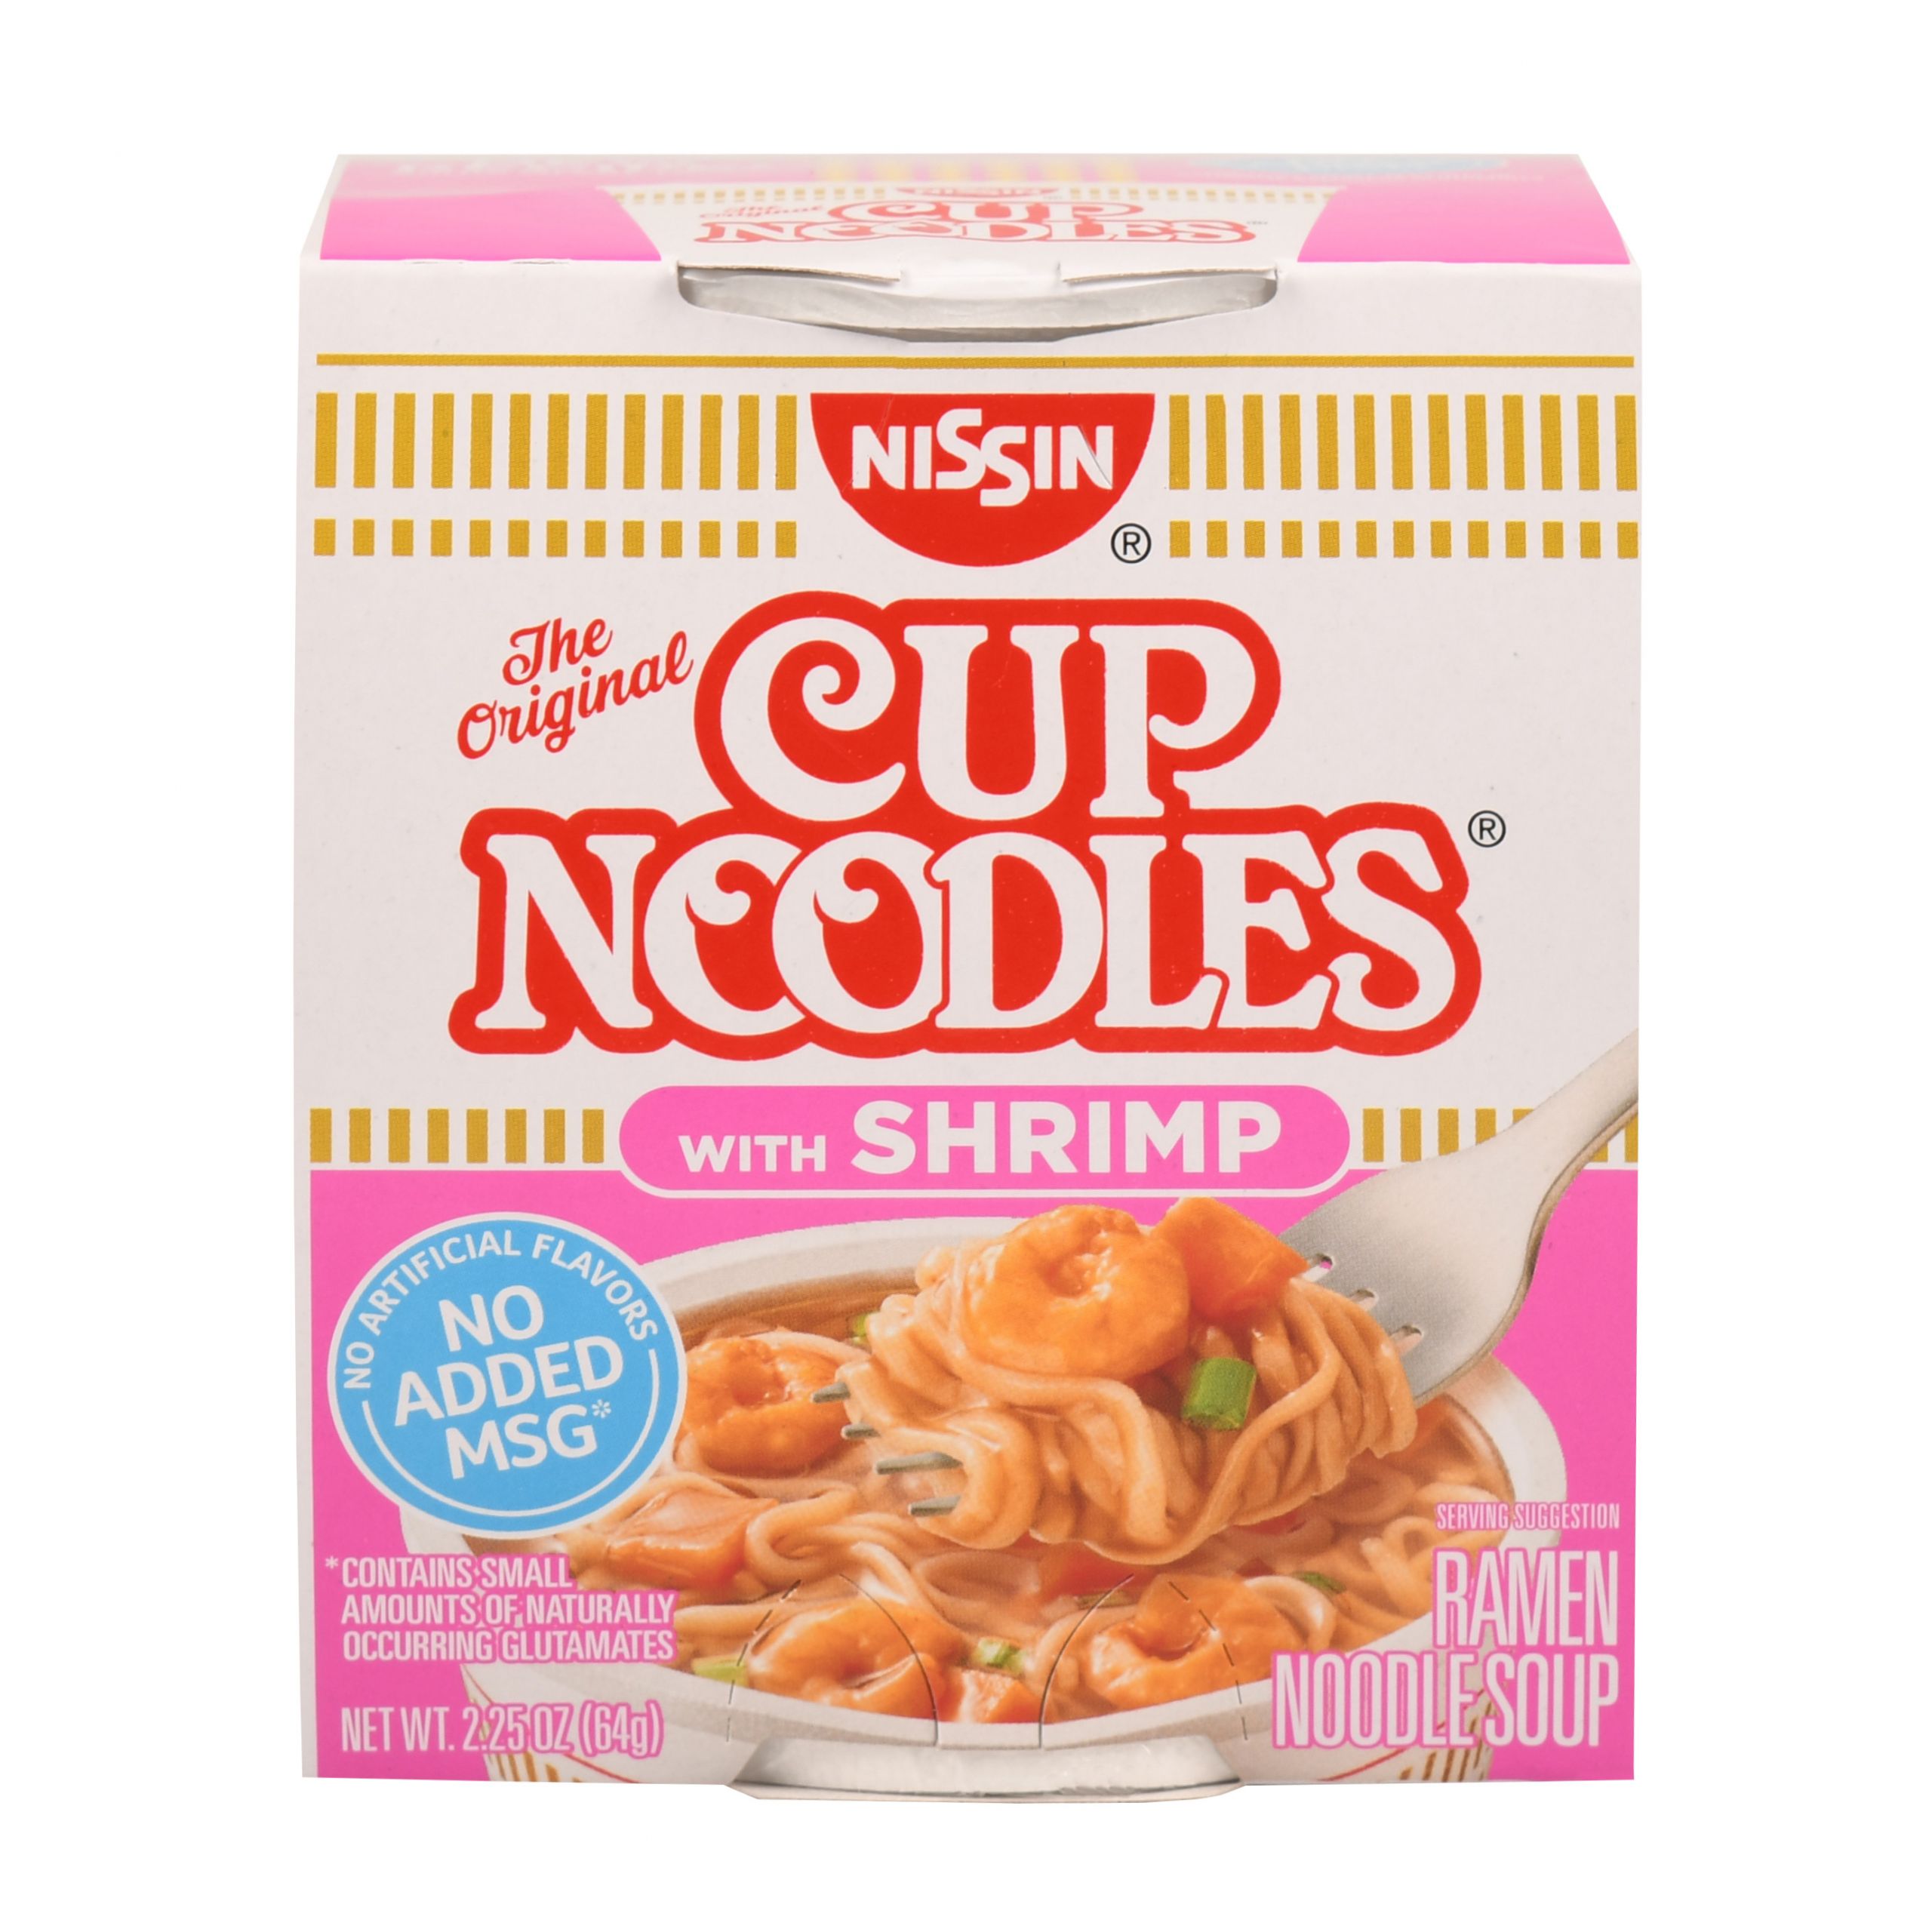 Cup Noodles Shrimp
 Nissin Cup Noodles with Shrimp Ramen Noodle Soup 2 25 oz